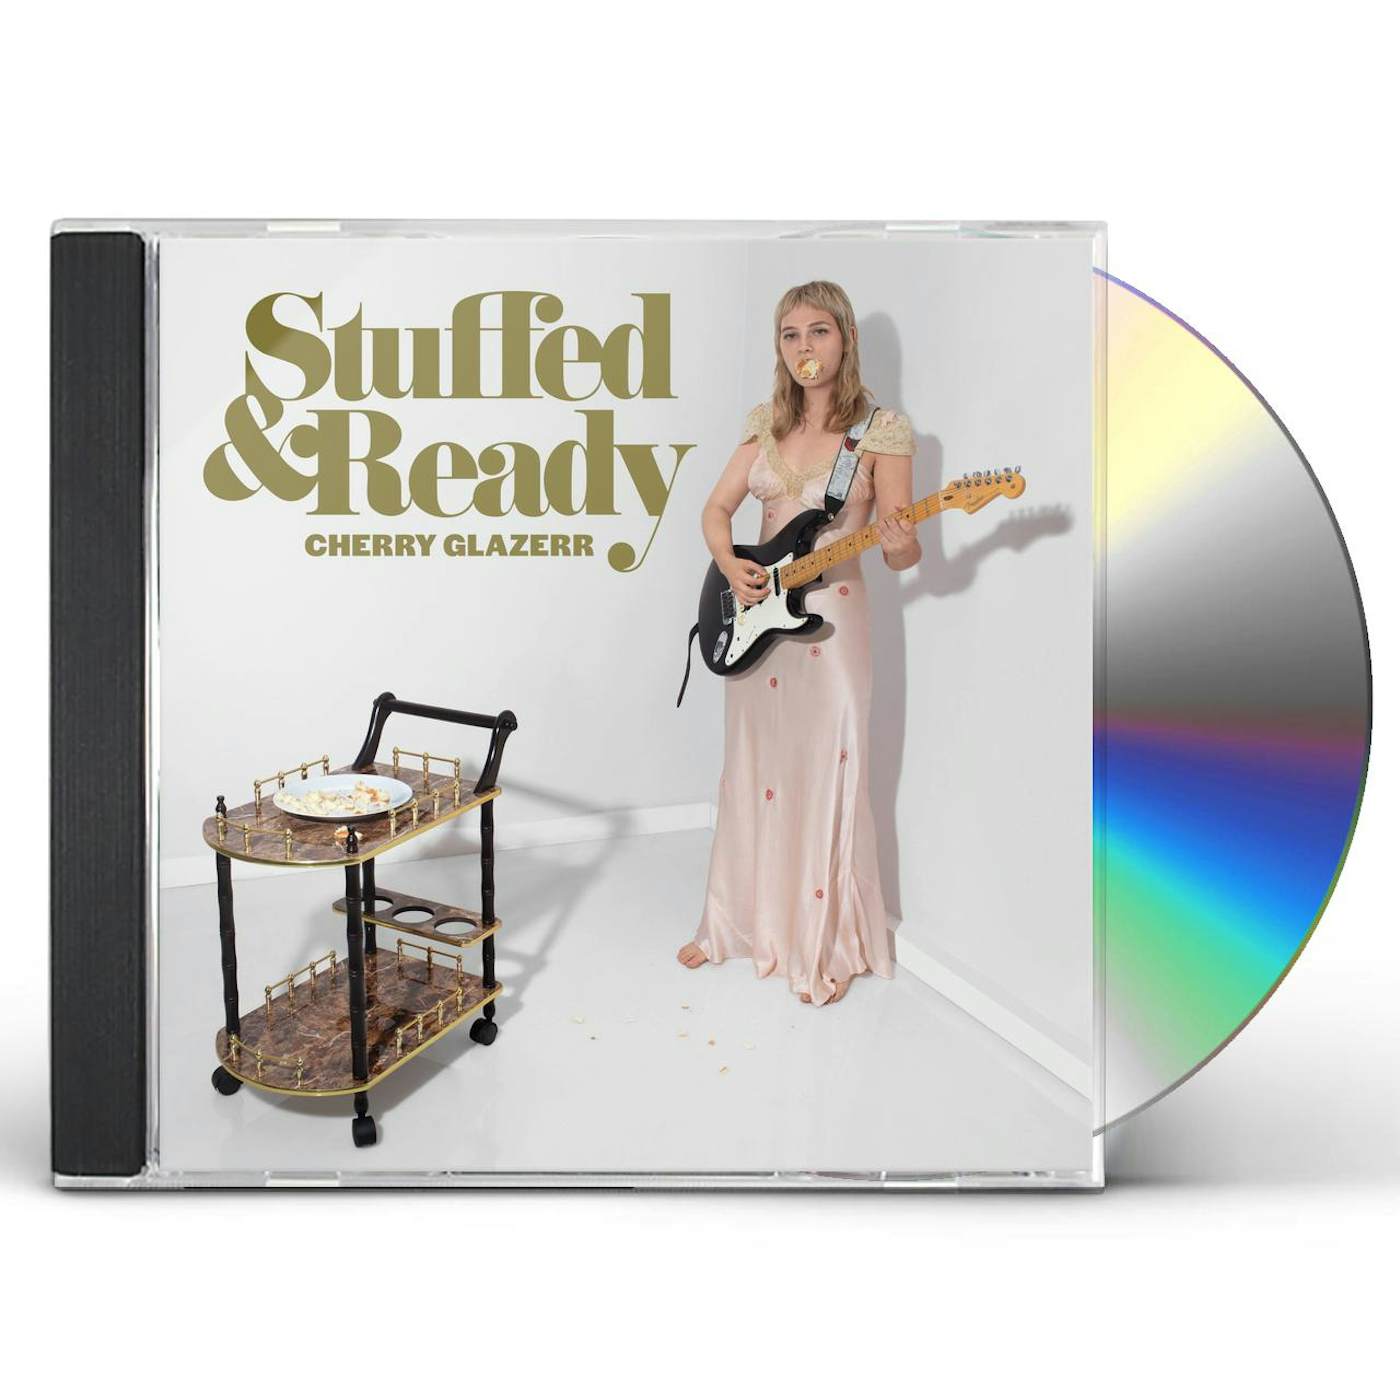 Cherry Glazerr STUFFED & READY CD